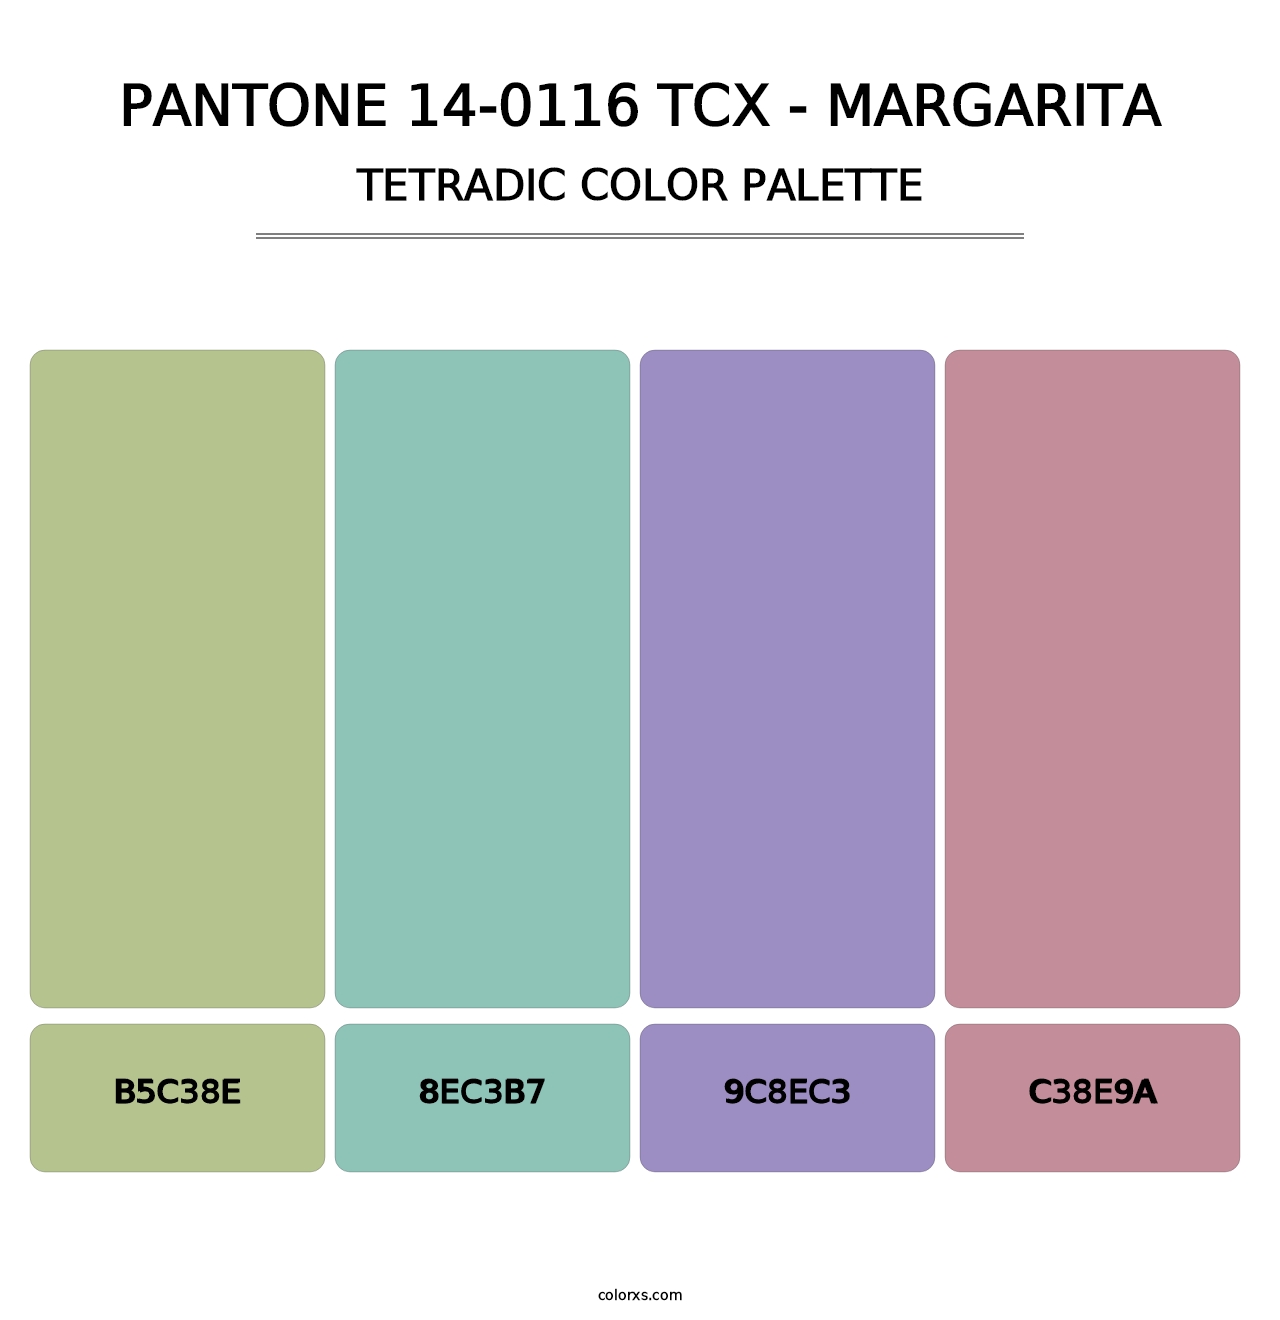 PANTONE 14-0116 TCX - Margarita - Tetradic Color Palette